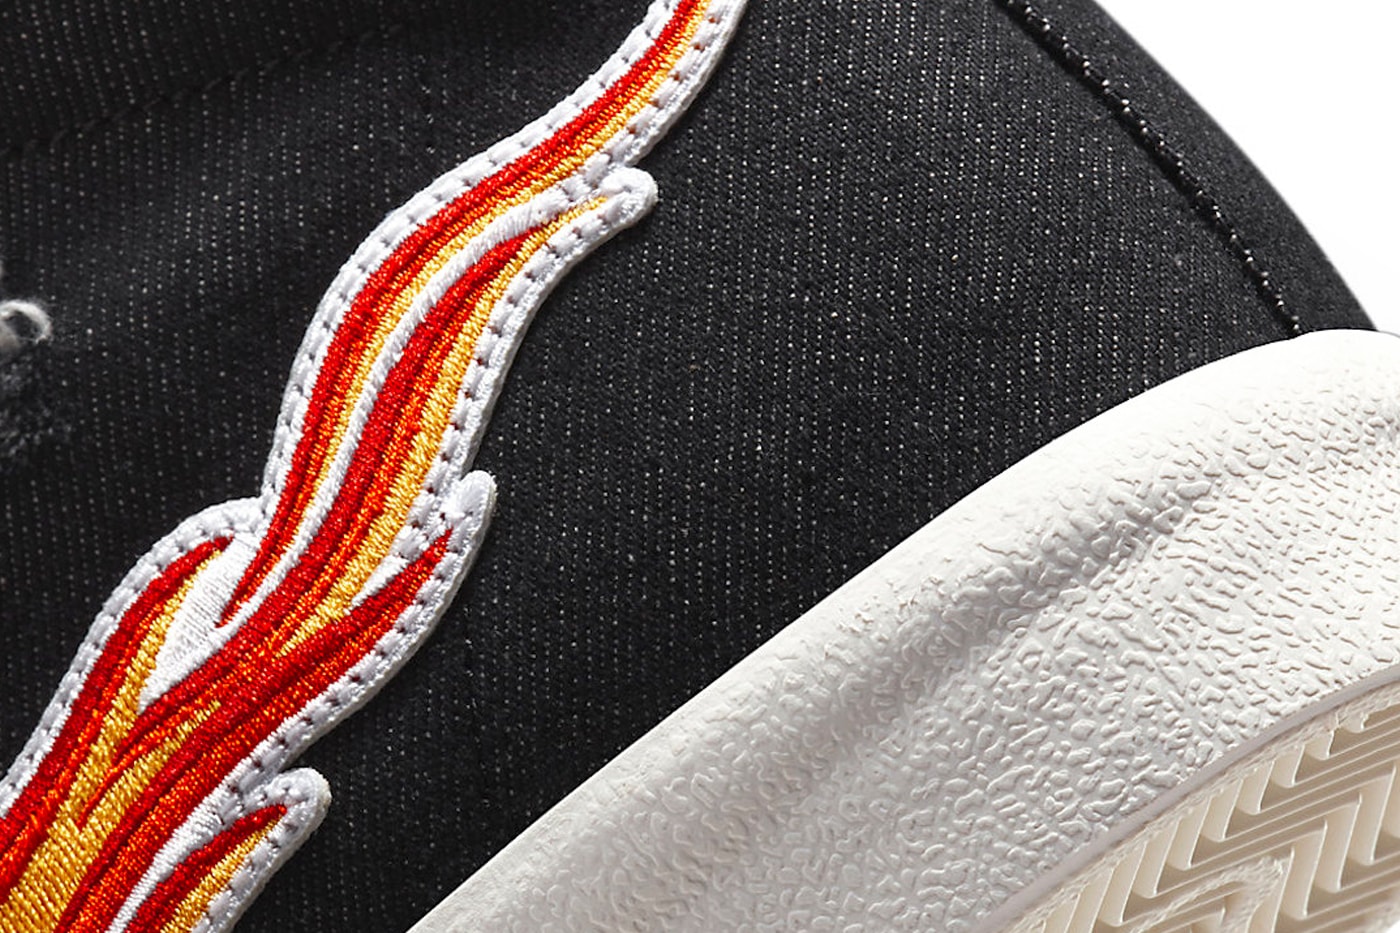 ナイキから“ロックの殿堂”に着想したブレーザー ミッドが誕生 Nike Blazer Mid “Cleveland Rocks” DQ7635-001 Release Date footwear sneakers Swoosh Rock & Roll Hall of Fame canvas exposed foam tongue black white red orange